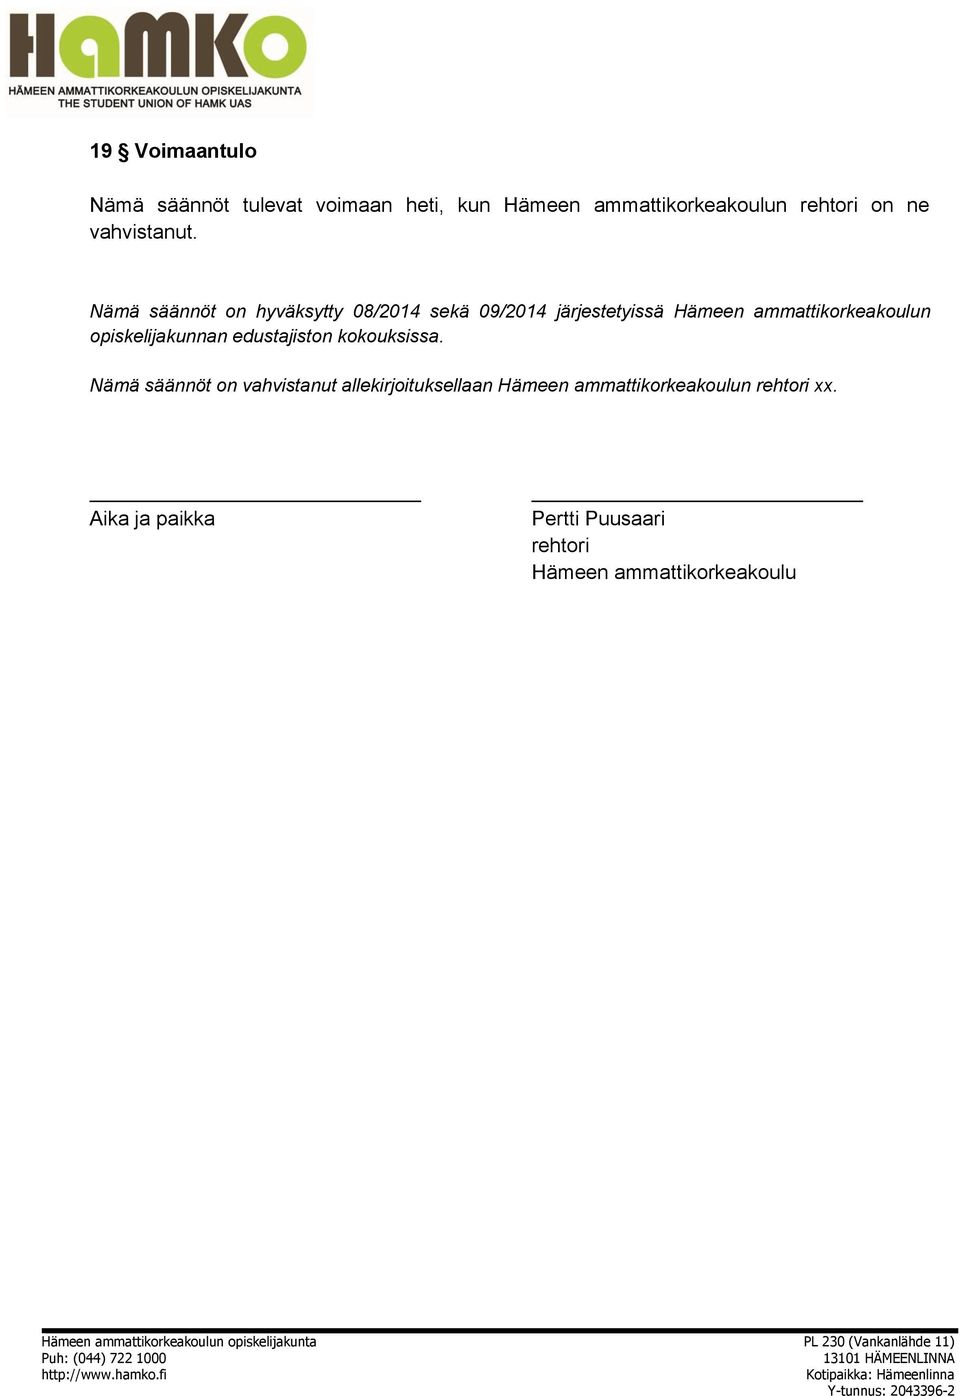 Nämä säännöt on hyväksytty 08/2014 sekä 09/2014 järjestetyissä Hämeen ammattikorkeakoulun